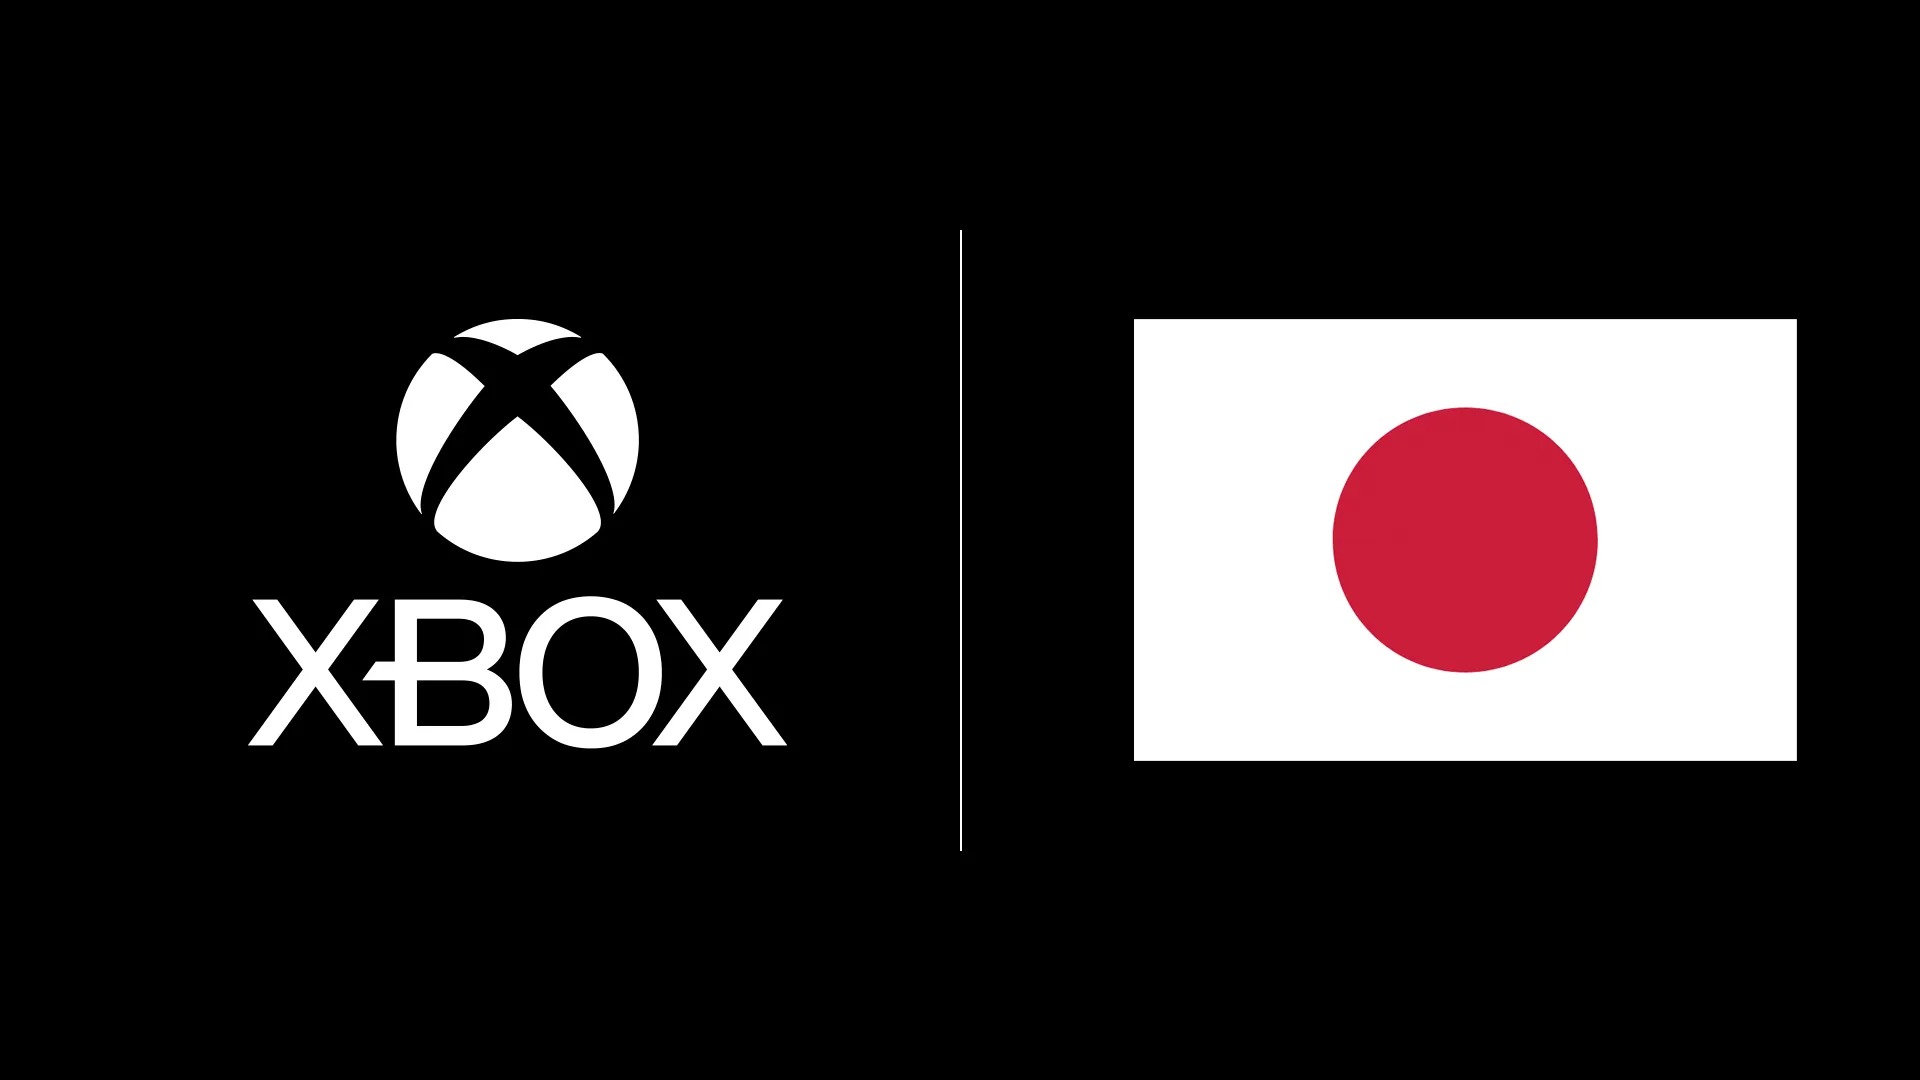 لوگوی ایکس باکس و پرچم کشور ژاپن در کنار یکدیگر